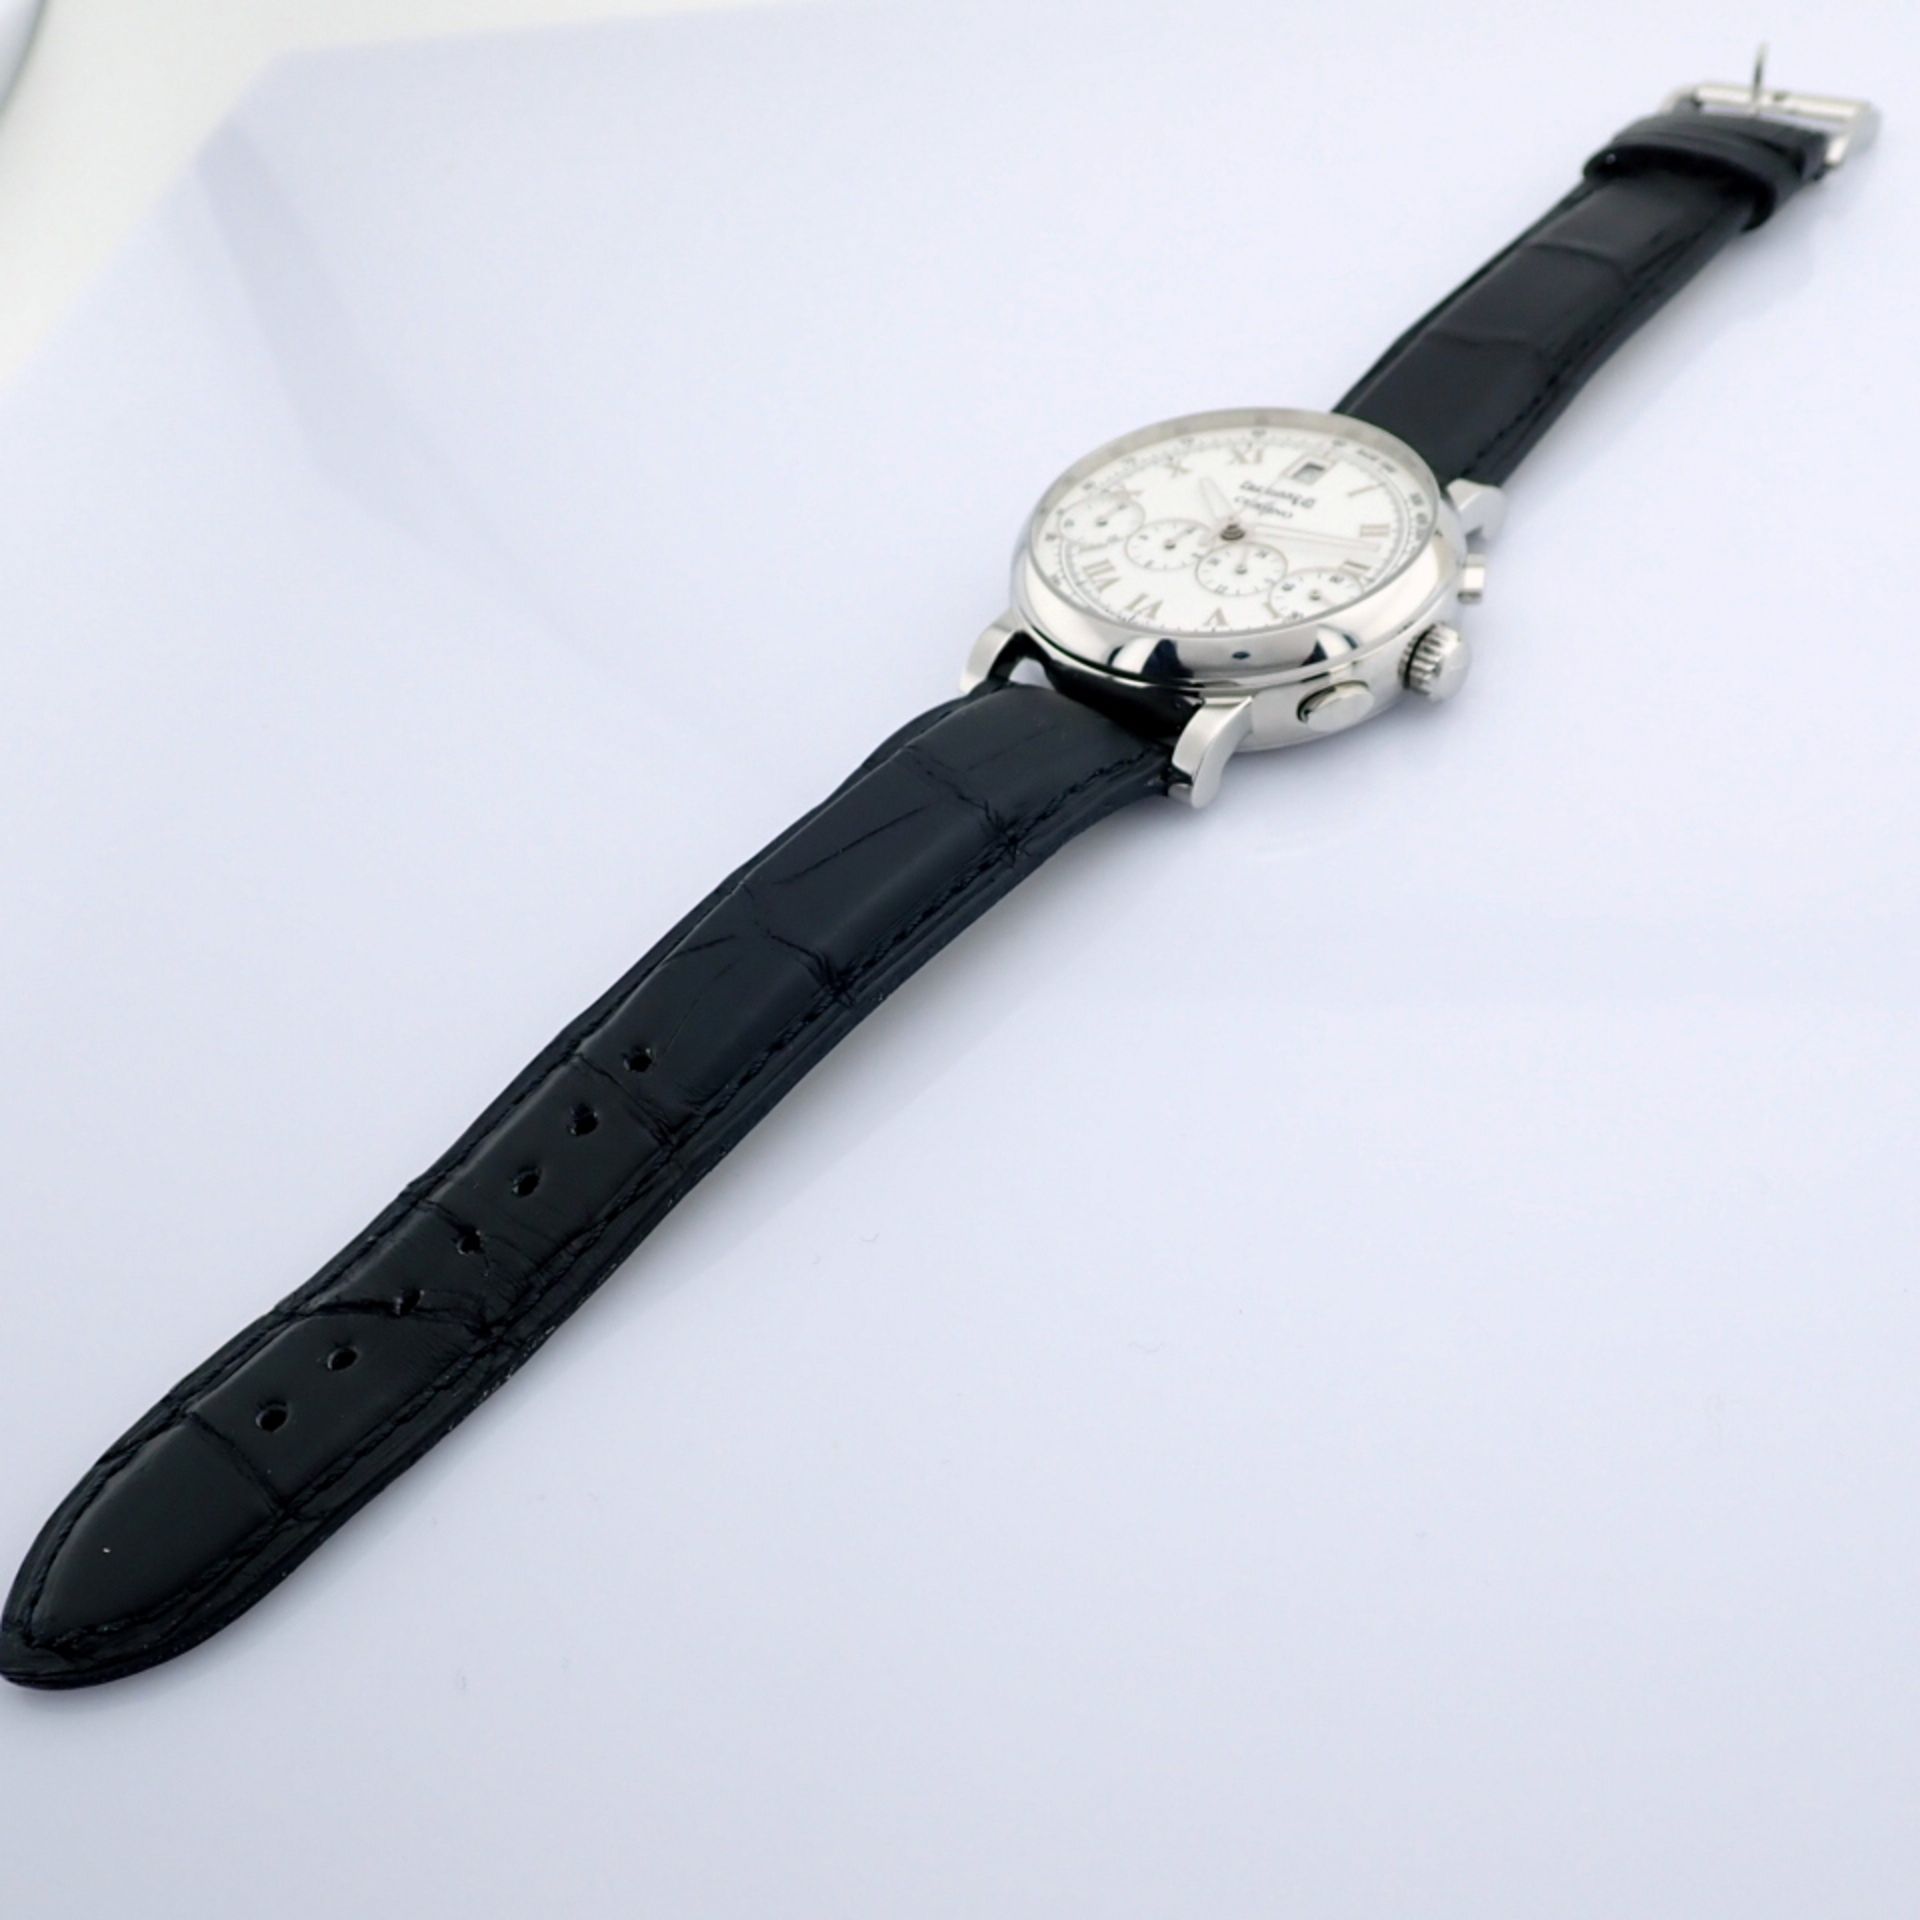 Eberhard & Co. / Chrono 4 Bellissimo 37 jewels - Gentlemen's Steel Wrist Watch - Image 5 of 10